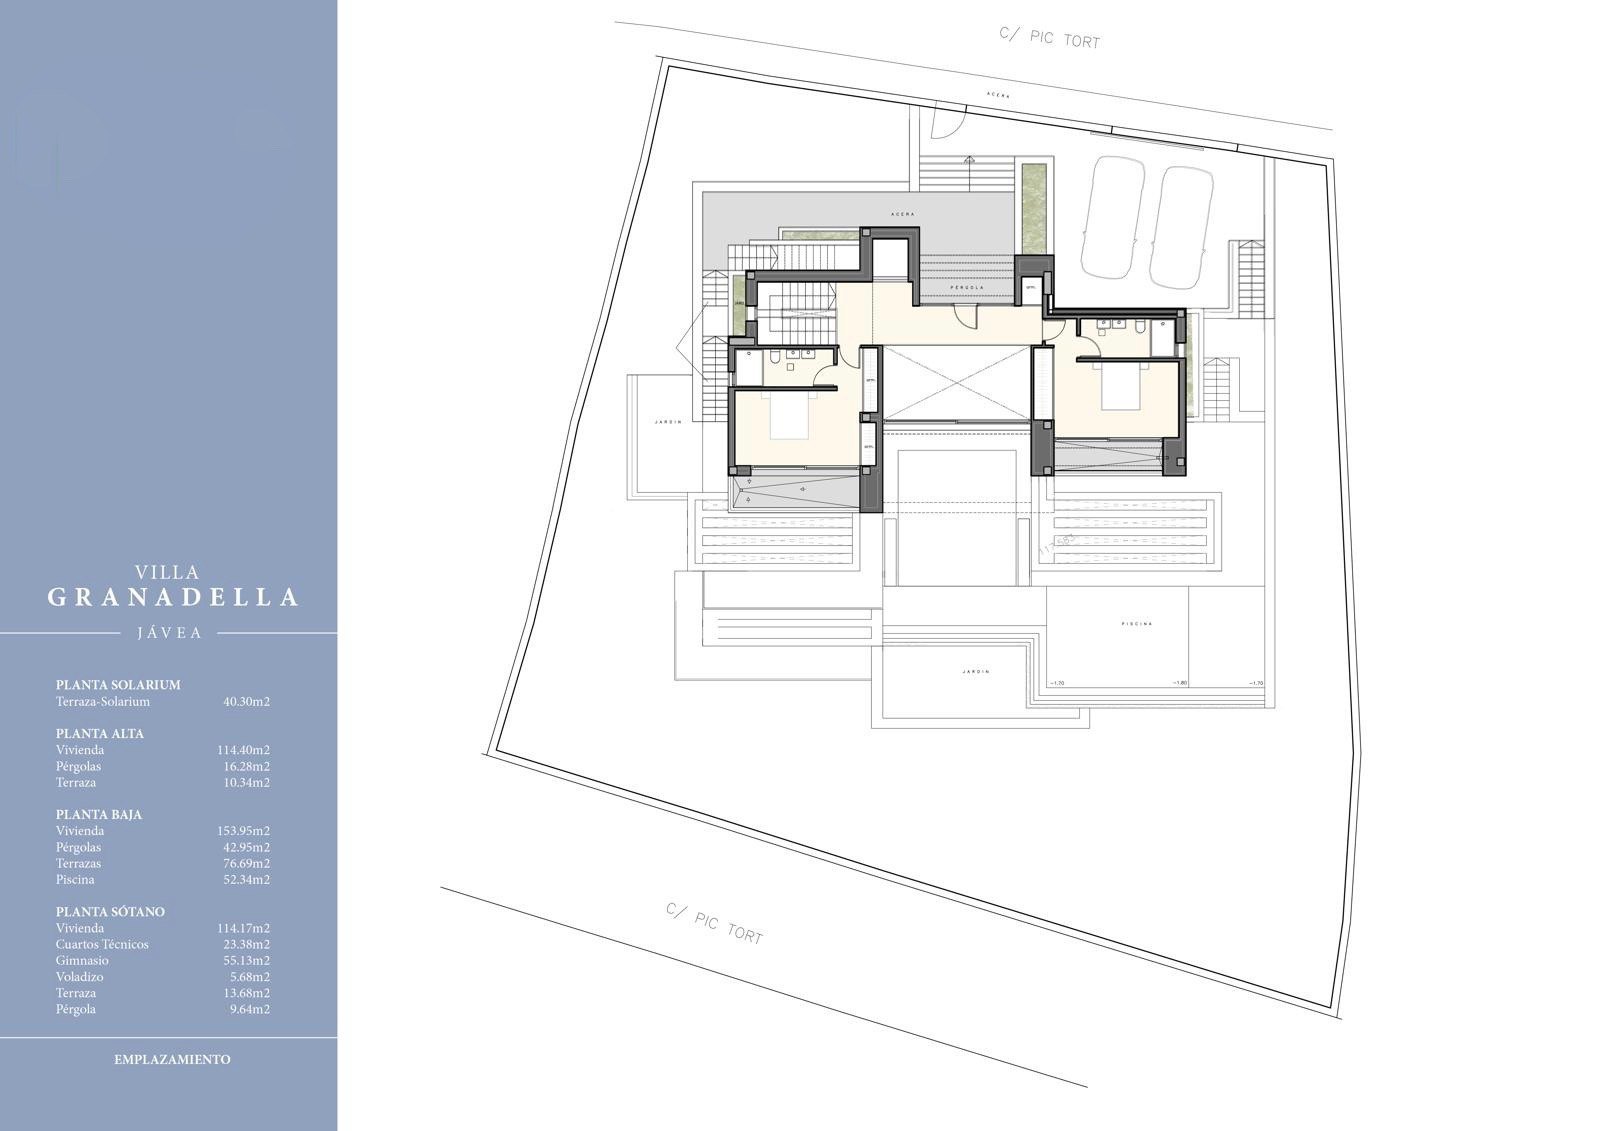 Project with Modern Luxury Villa License for Sale in La Granadella - Javea - Costa Blanca